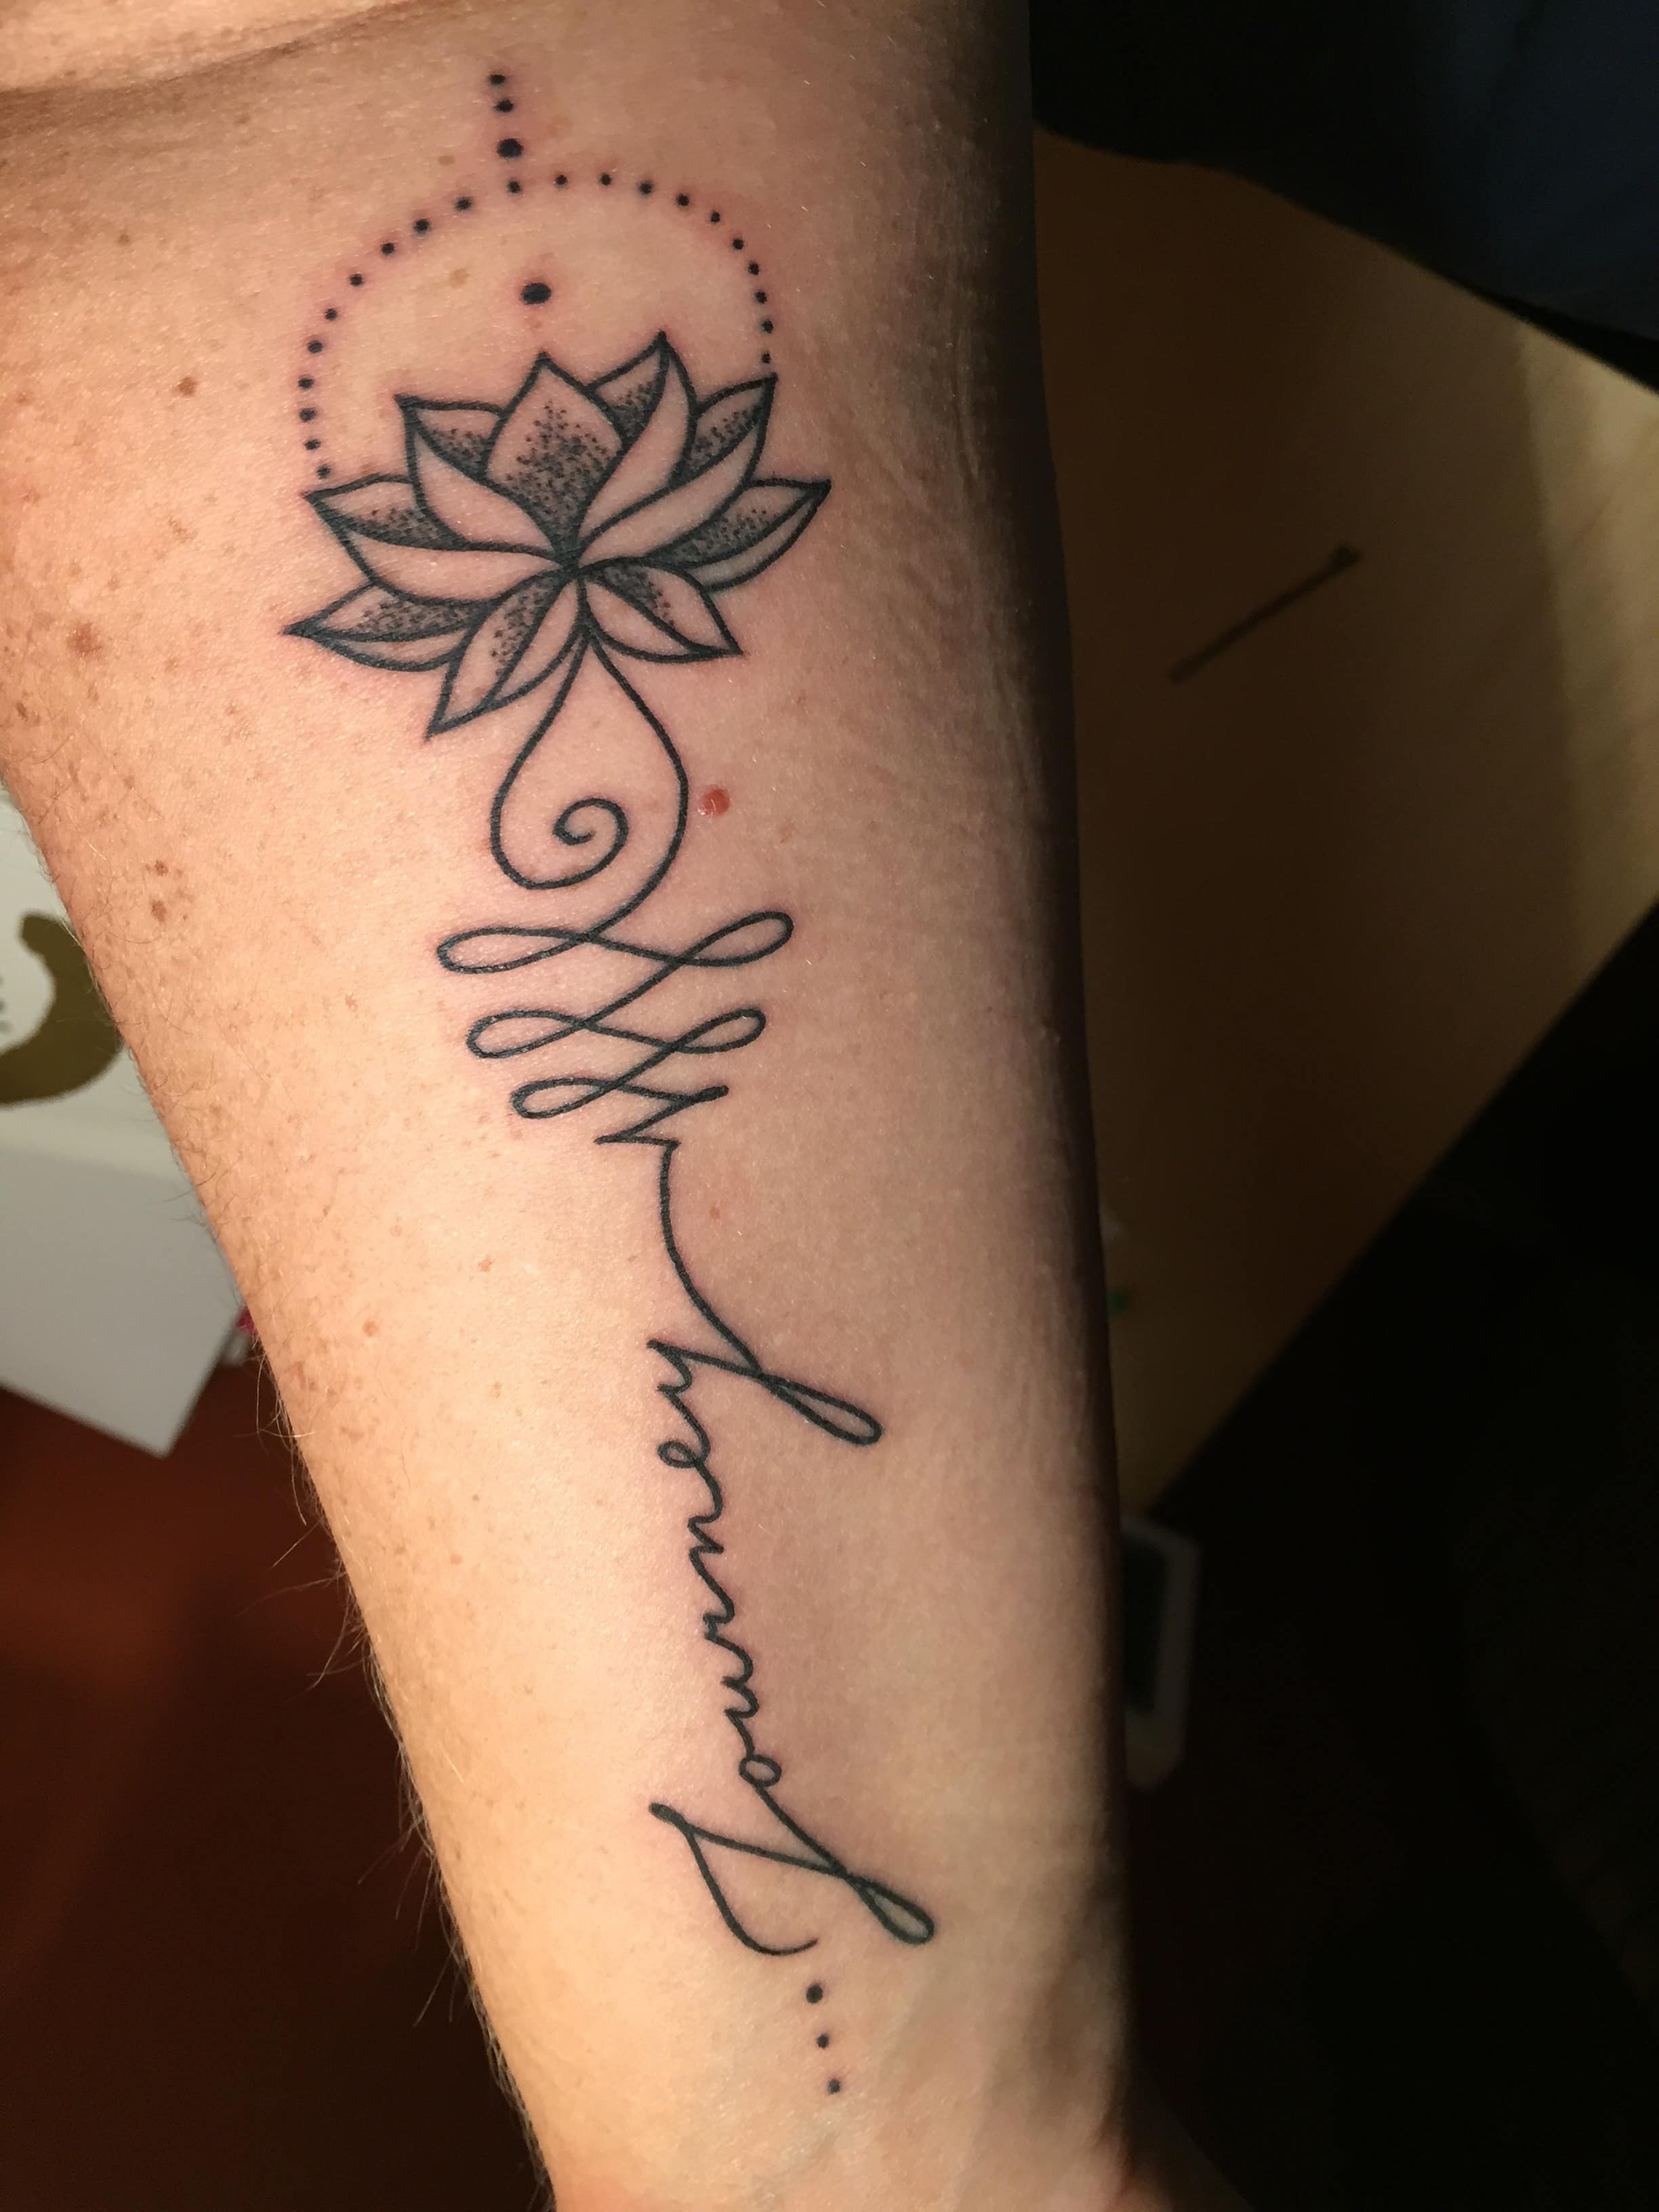 Lotus and journye tattoo